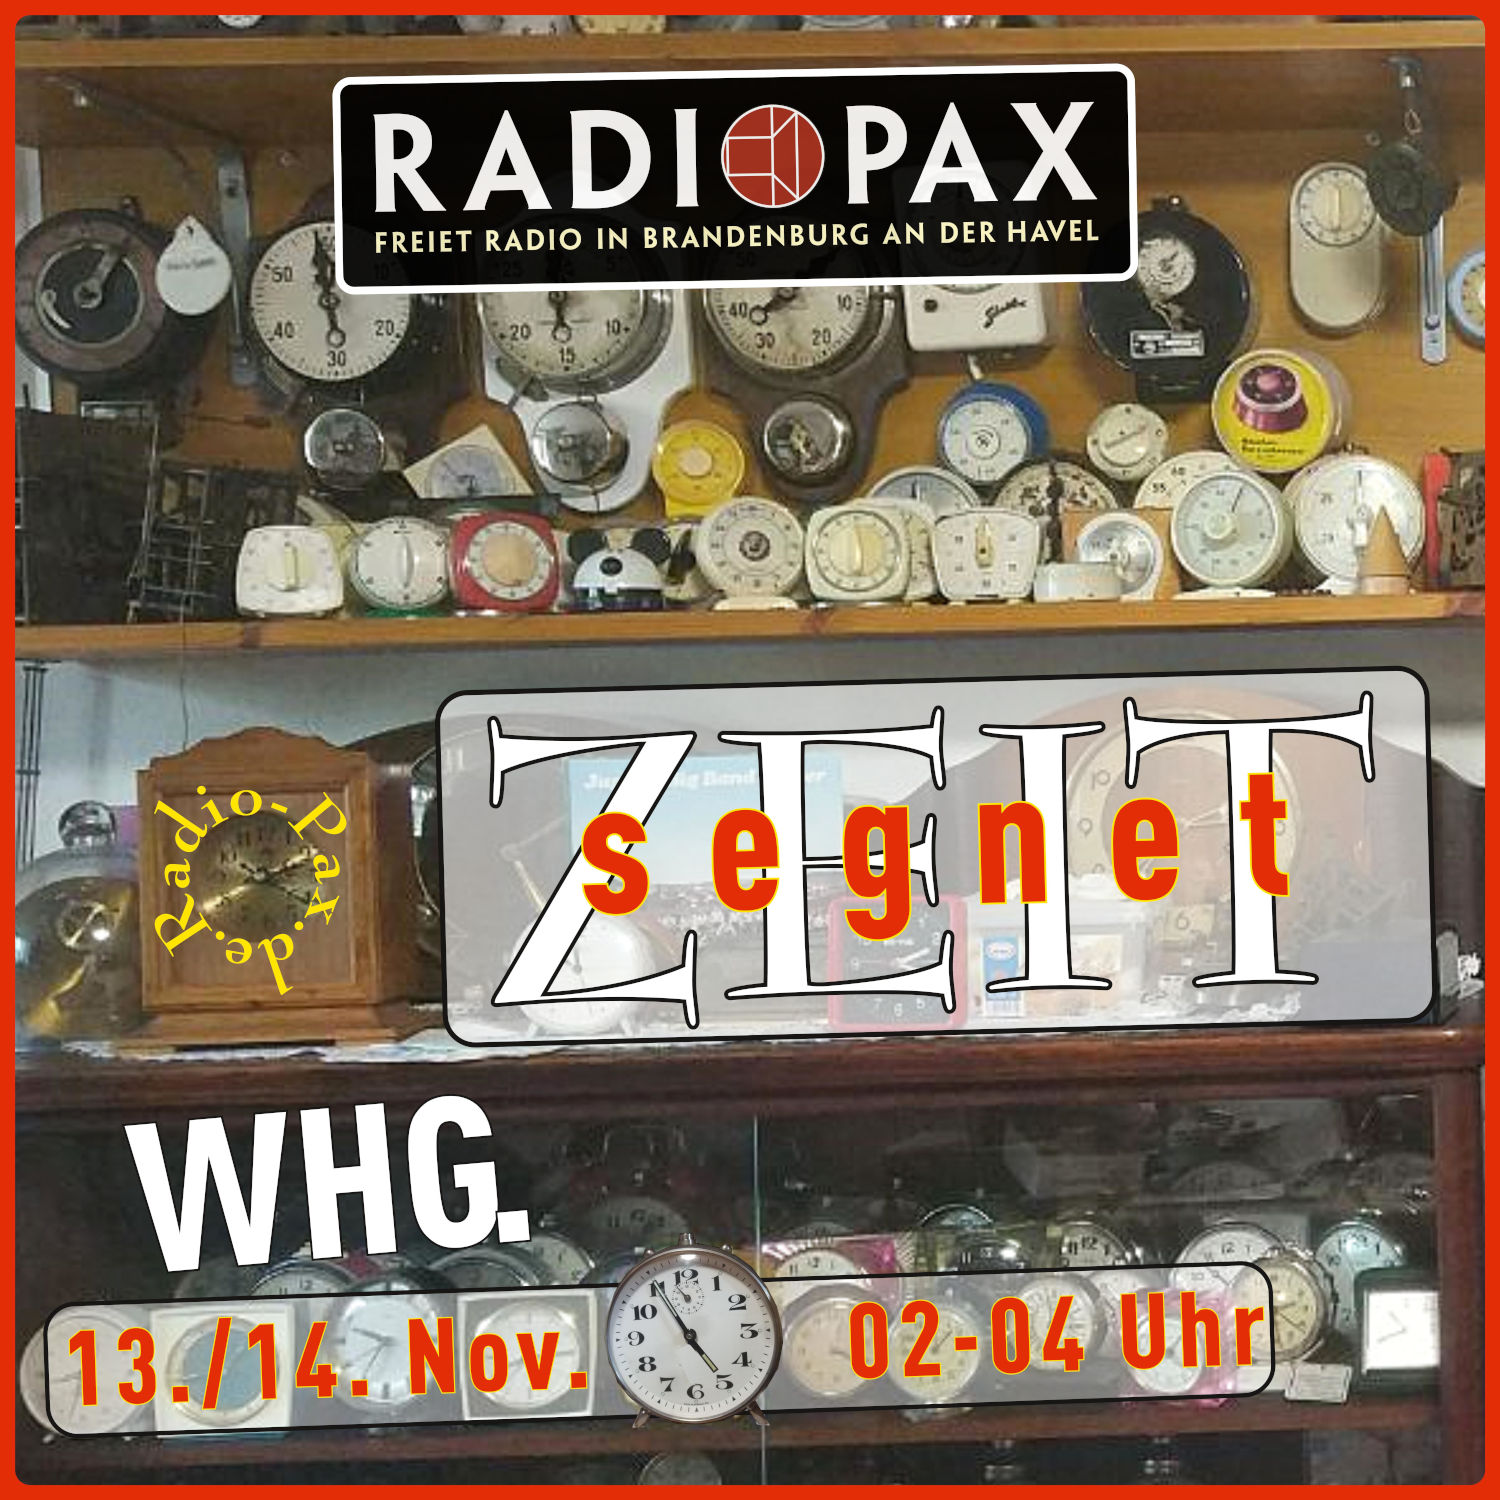 RADIO PAX (Whg. der Oktoberersendung) in der Nacht zum 14. Oktober von 2 bis 4 Uhr